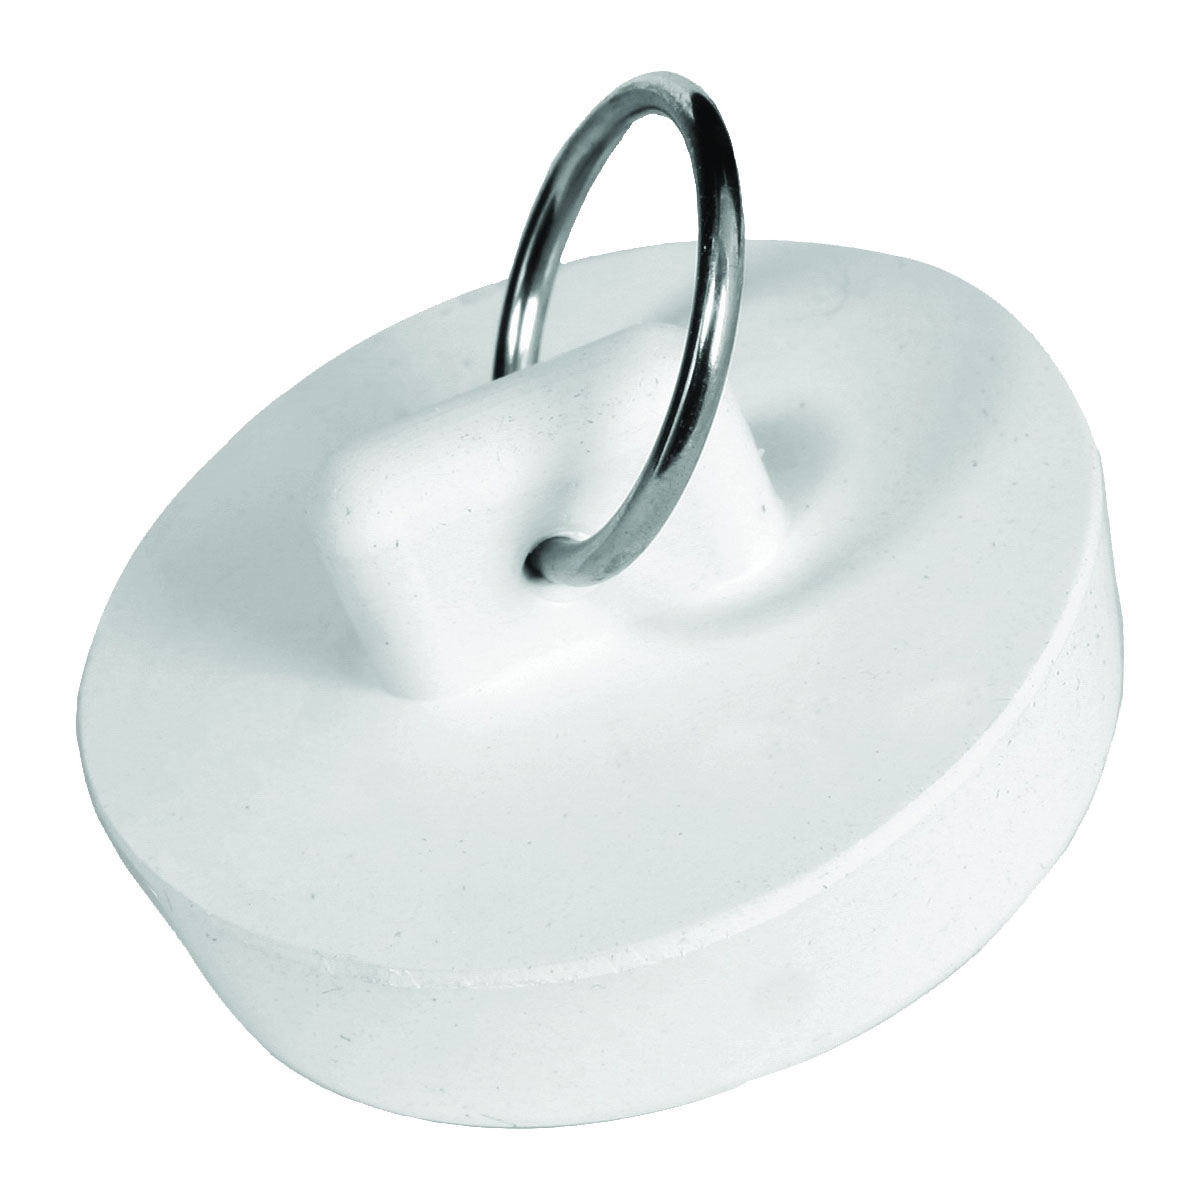 Danco 1-1/2 inch Rubber Drain Stopper, White, Carded, 80227